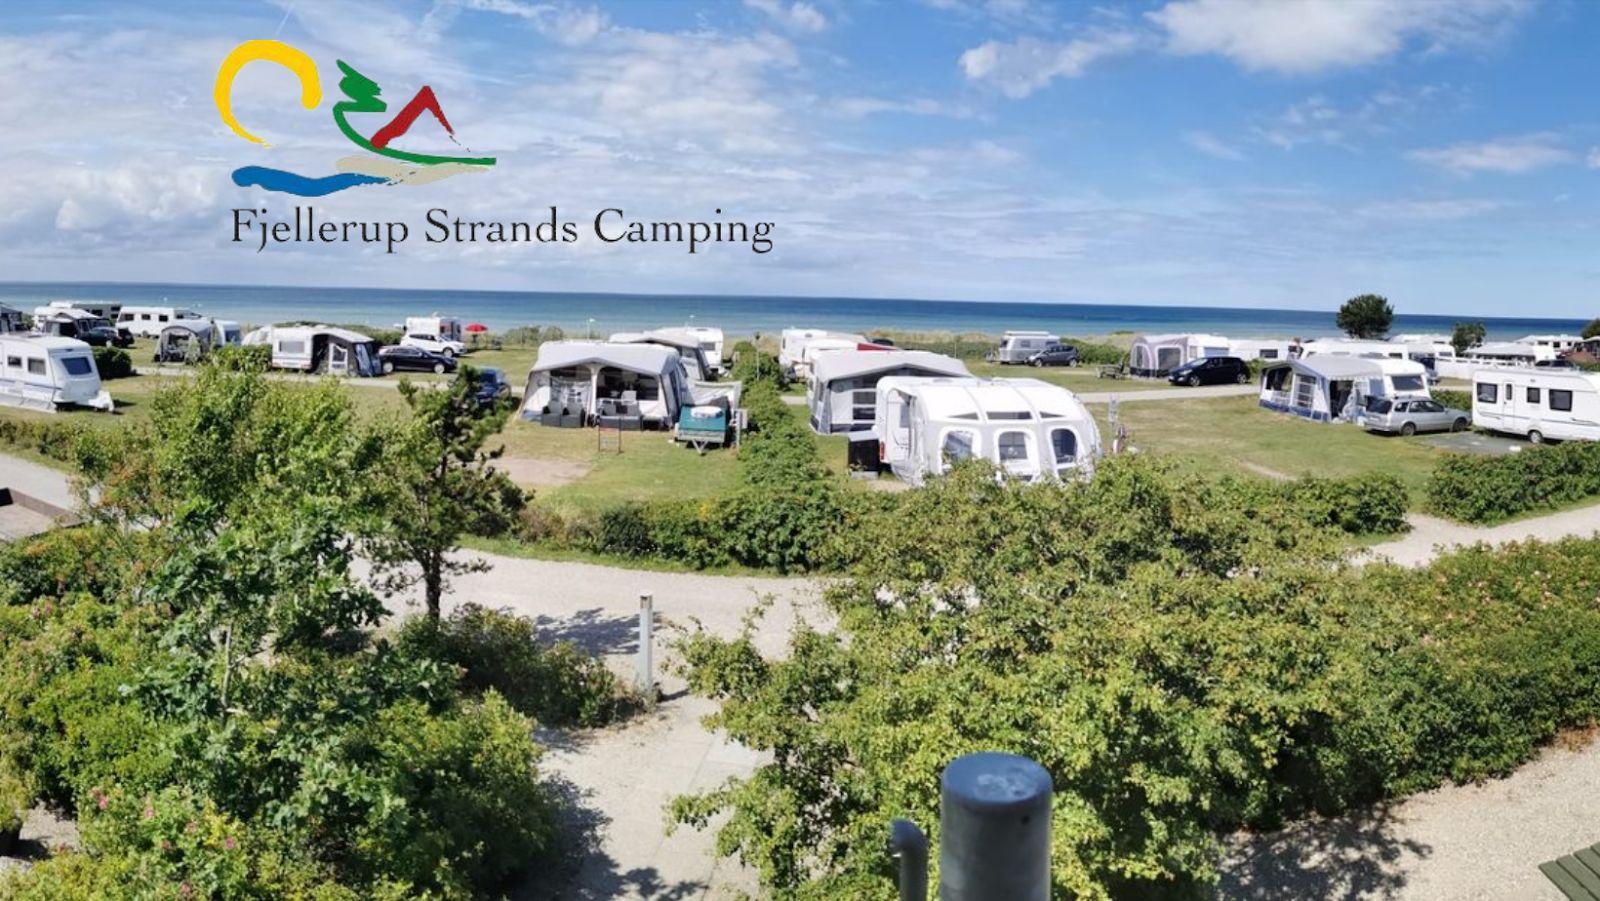 Fjellerup Strands Camping | Campingplads på Djursland, Glesborg, Denmark